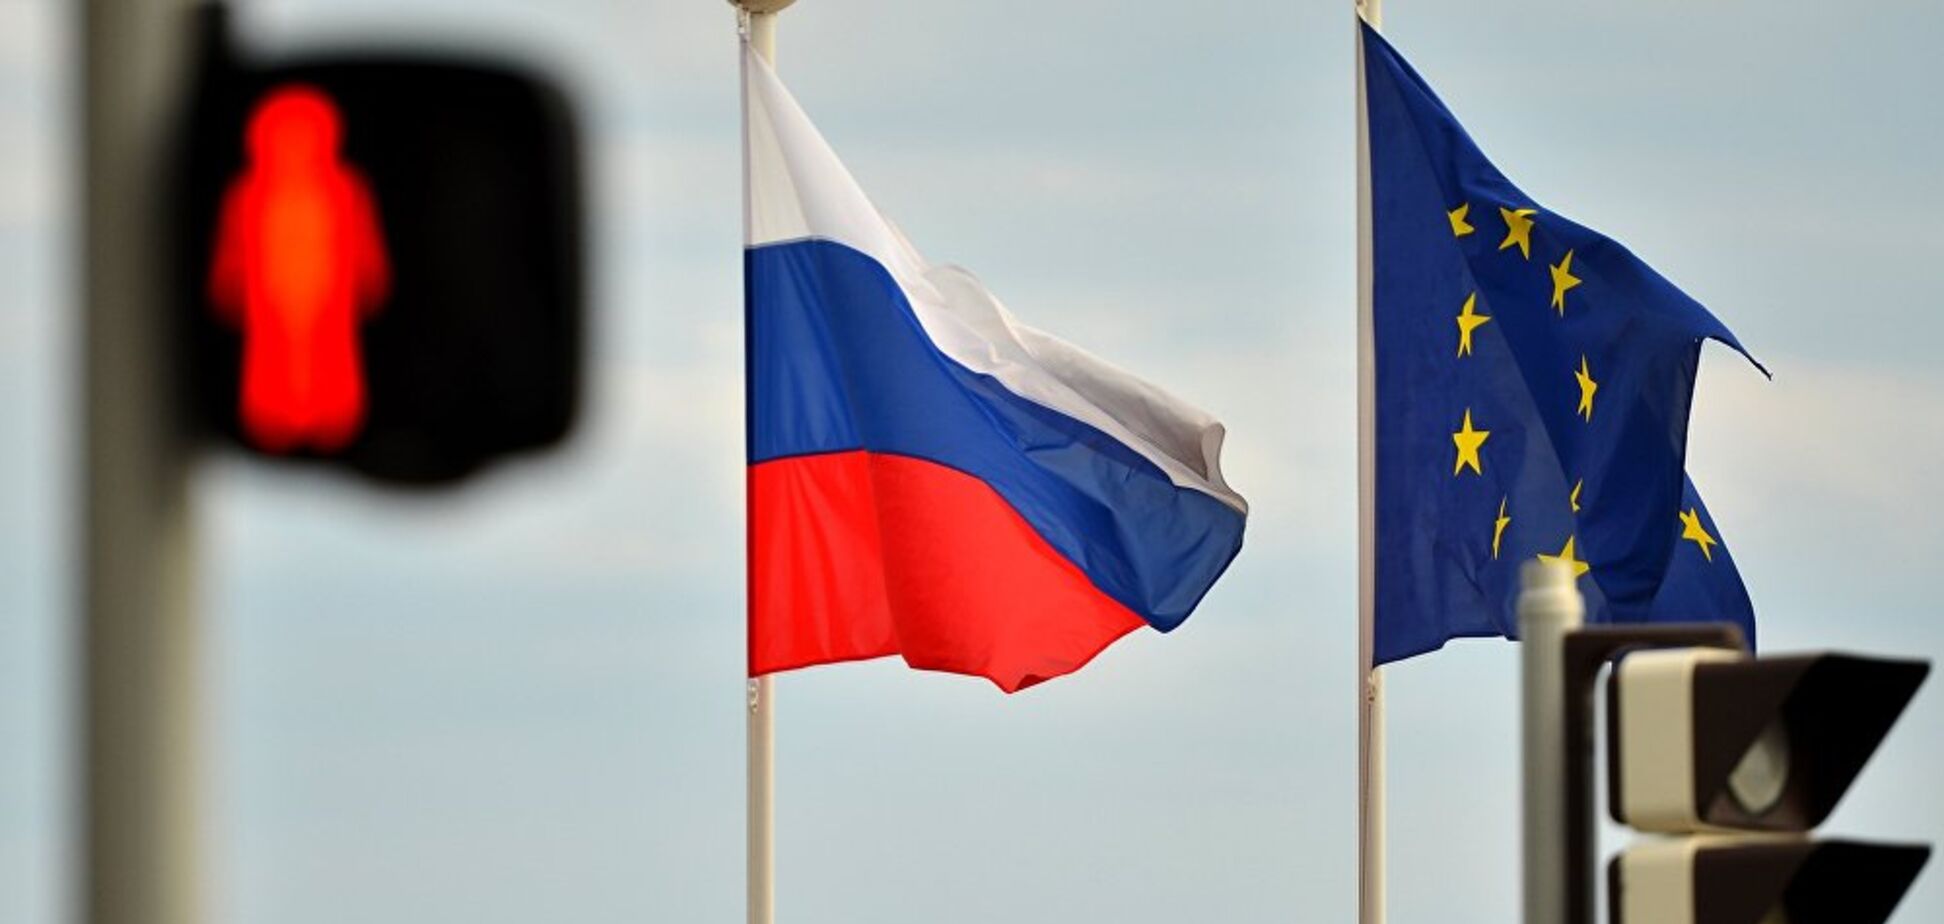 Як країни Євросоюзу ставляться до Росії: опублікований рейтинг 'друзів' і 'ворогів'